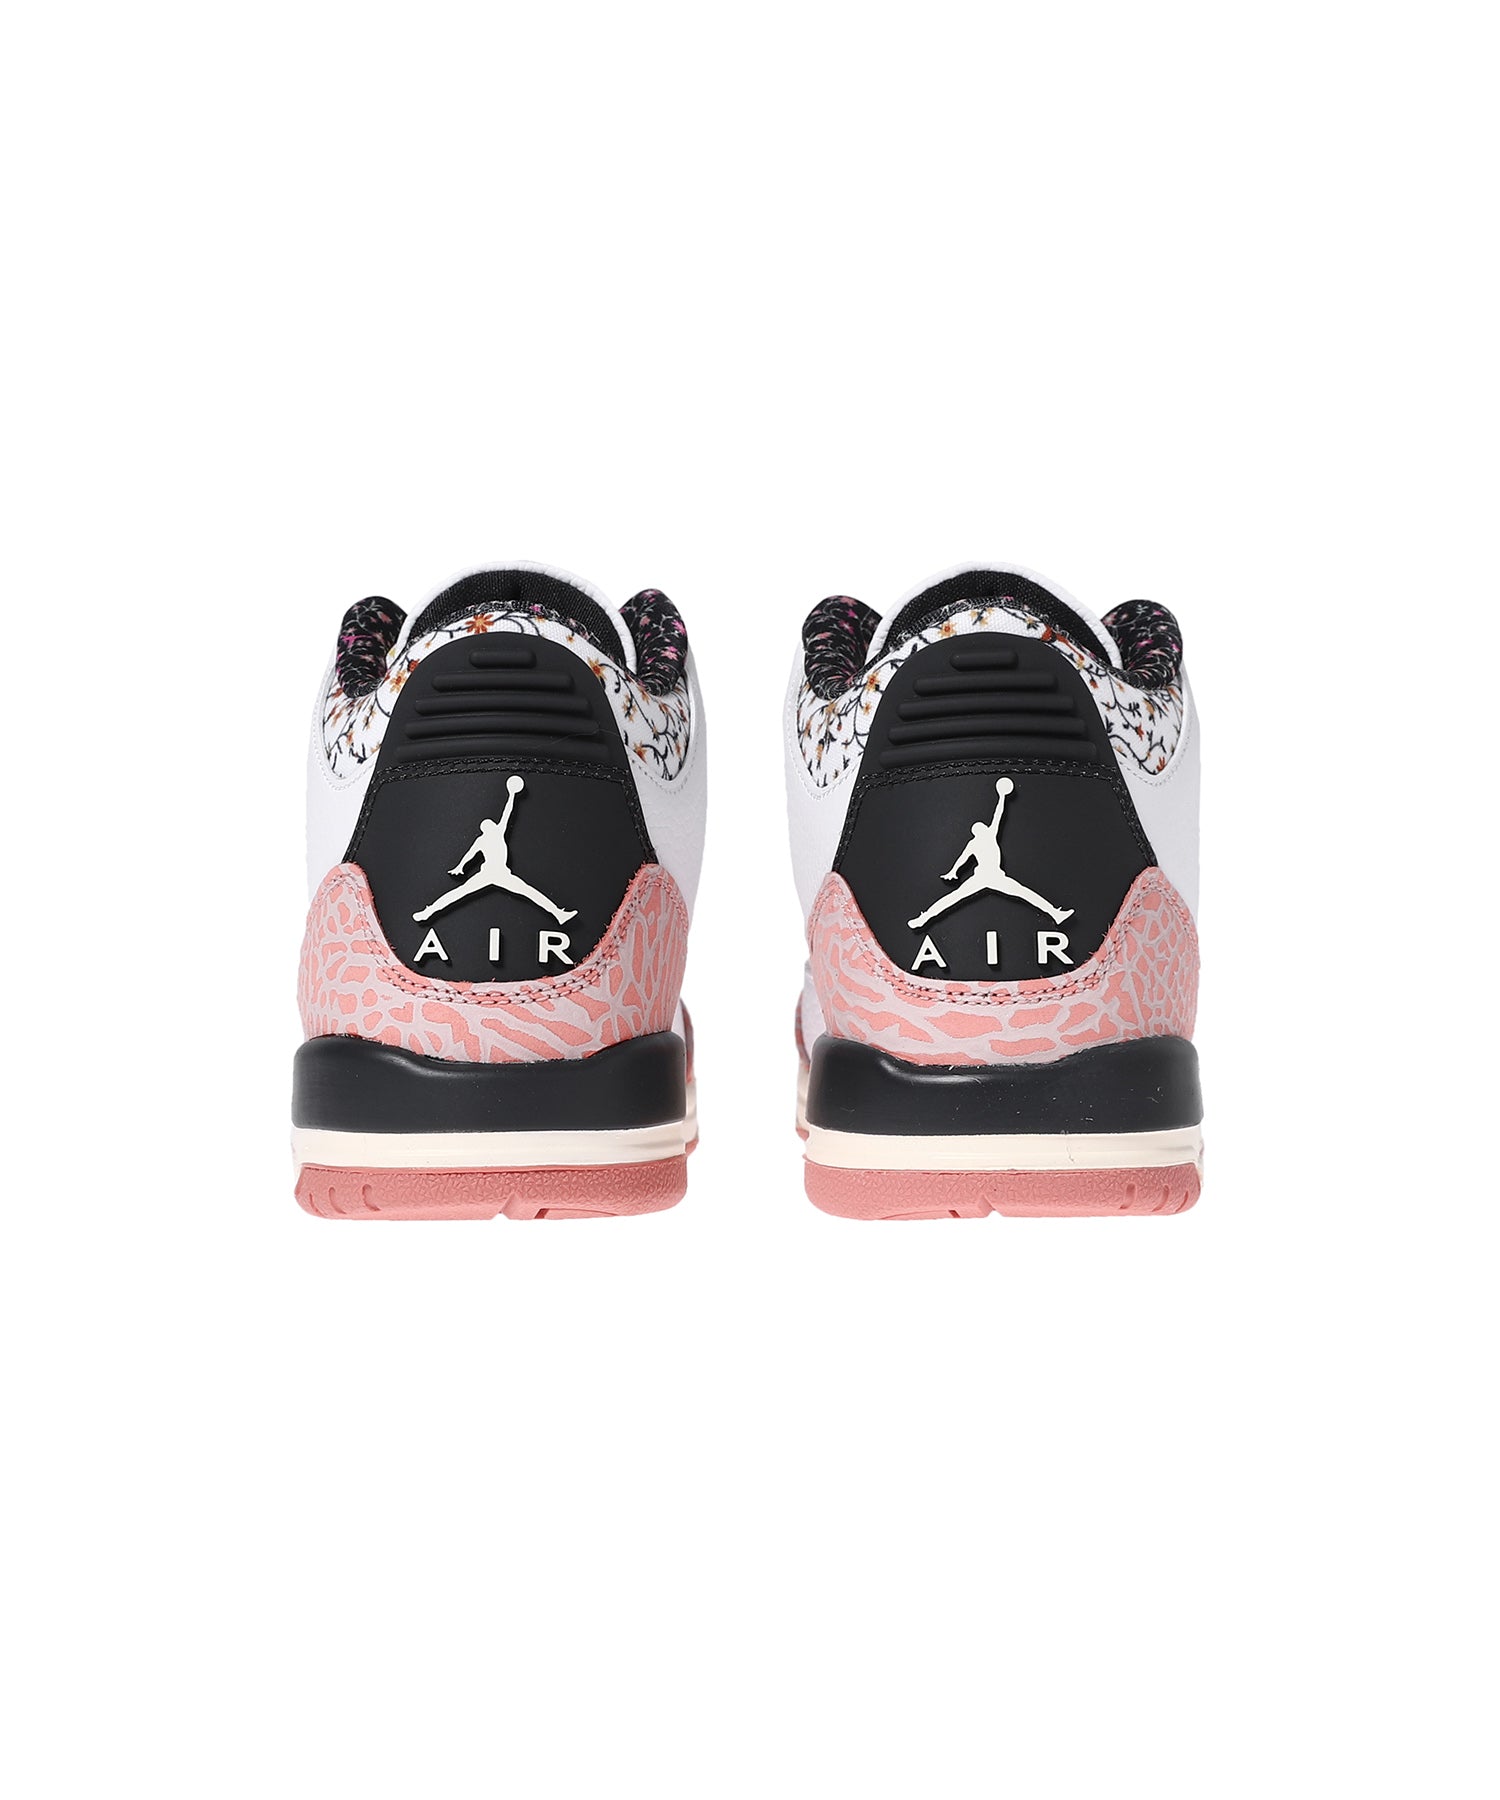 Air Jordan 3 Retro Gs